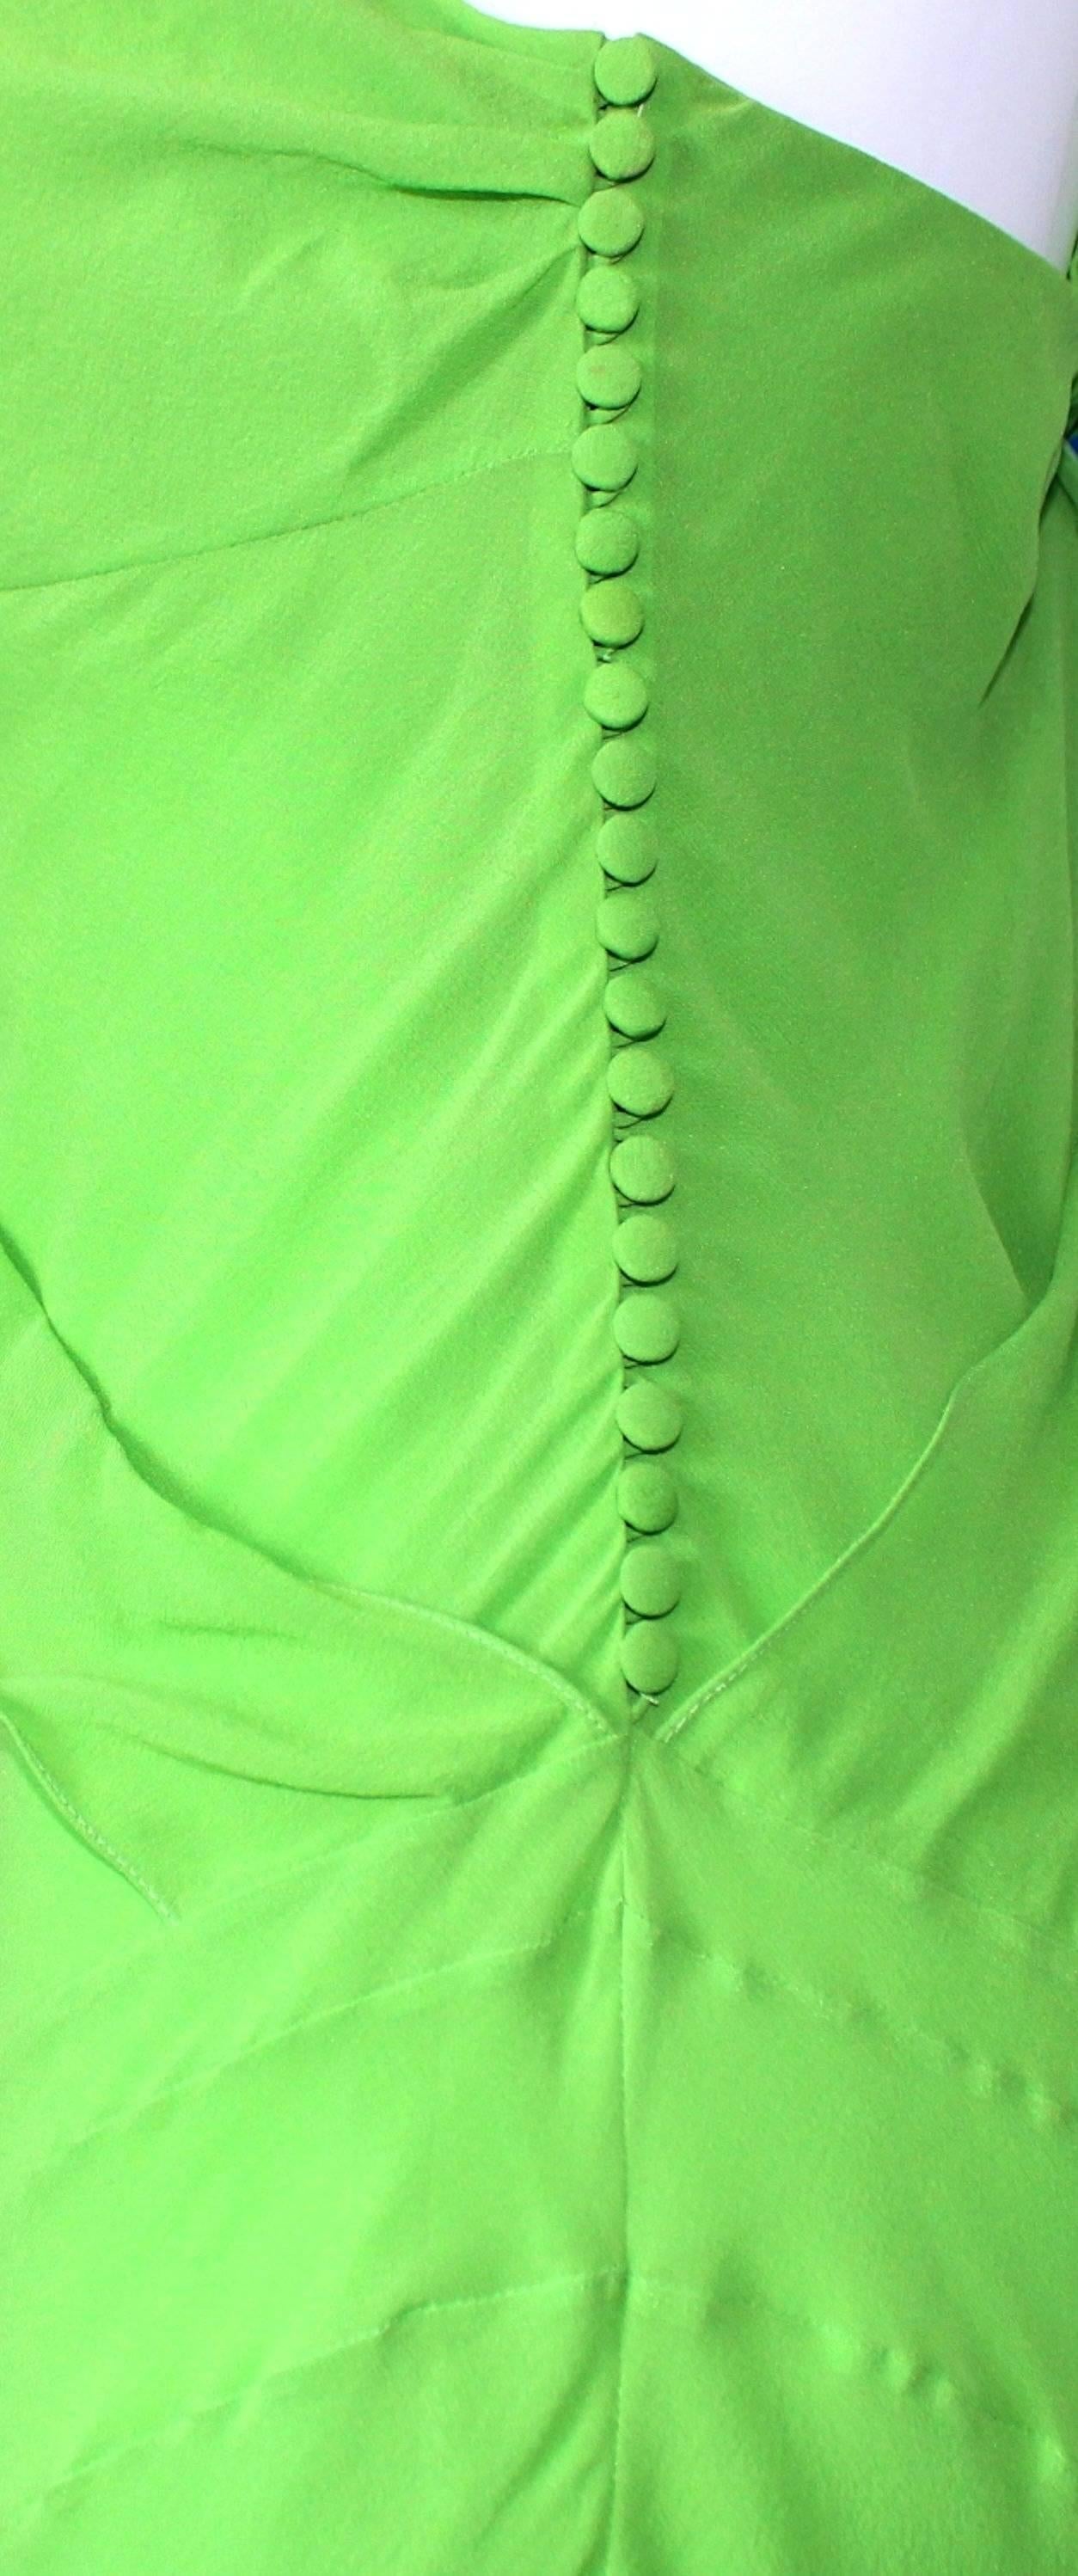 christian dior green dress